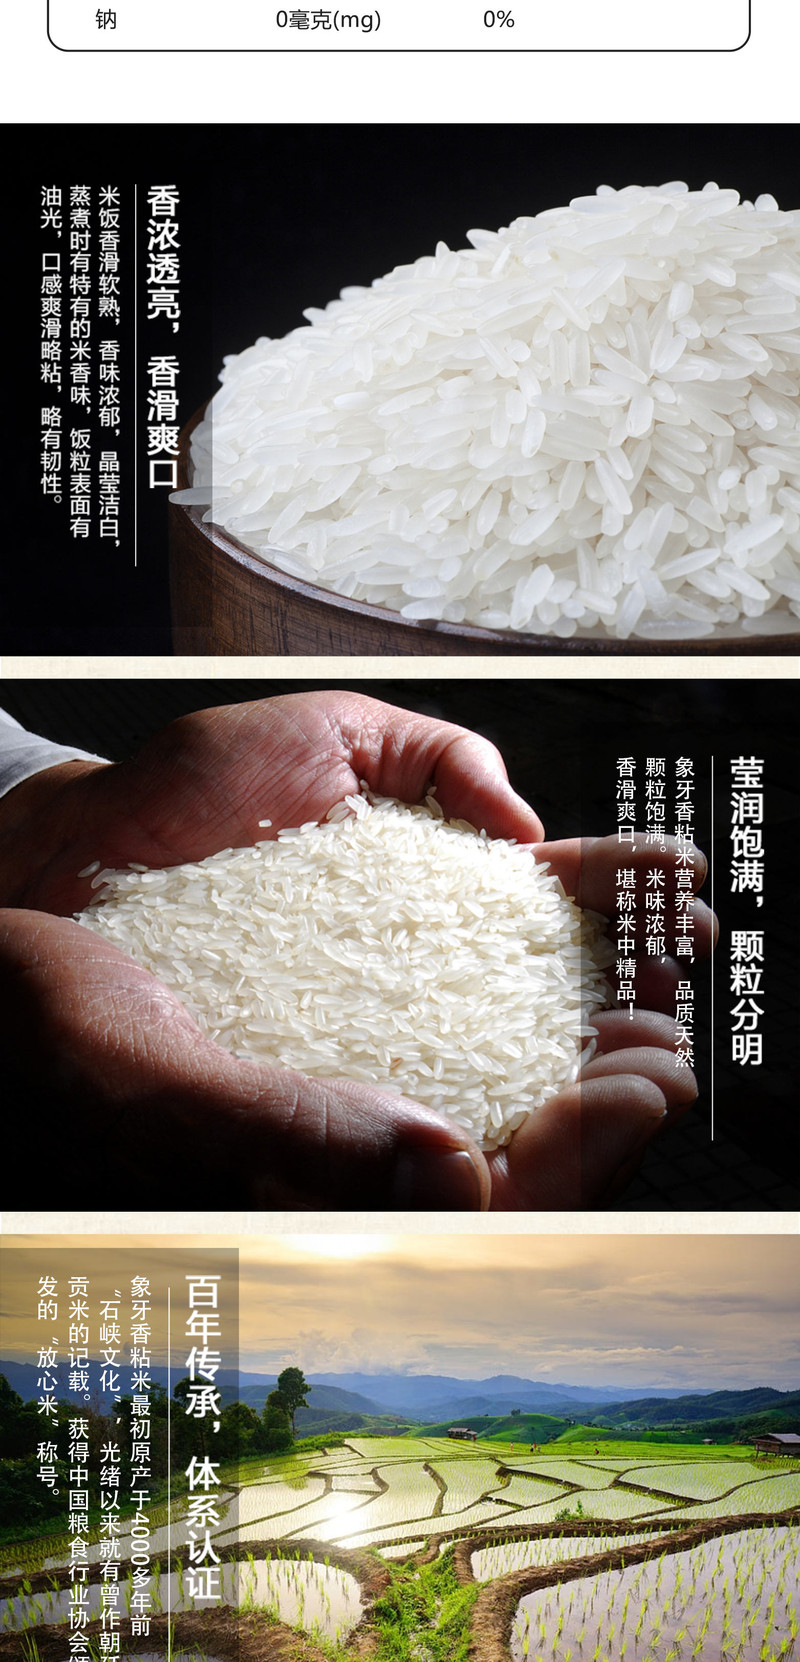 千山白玉香米 【新米】鼠牙油粘 长粒籼米 真空装 2KG (4斤)